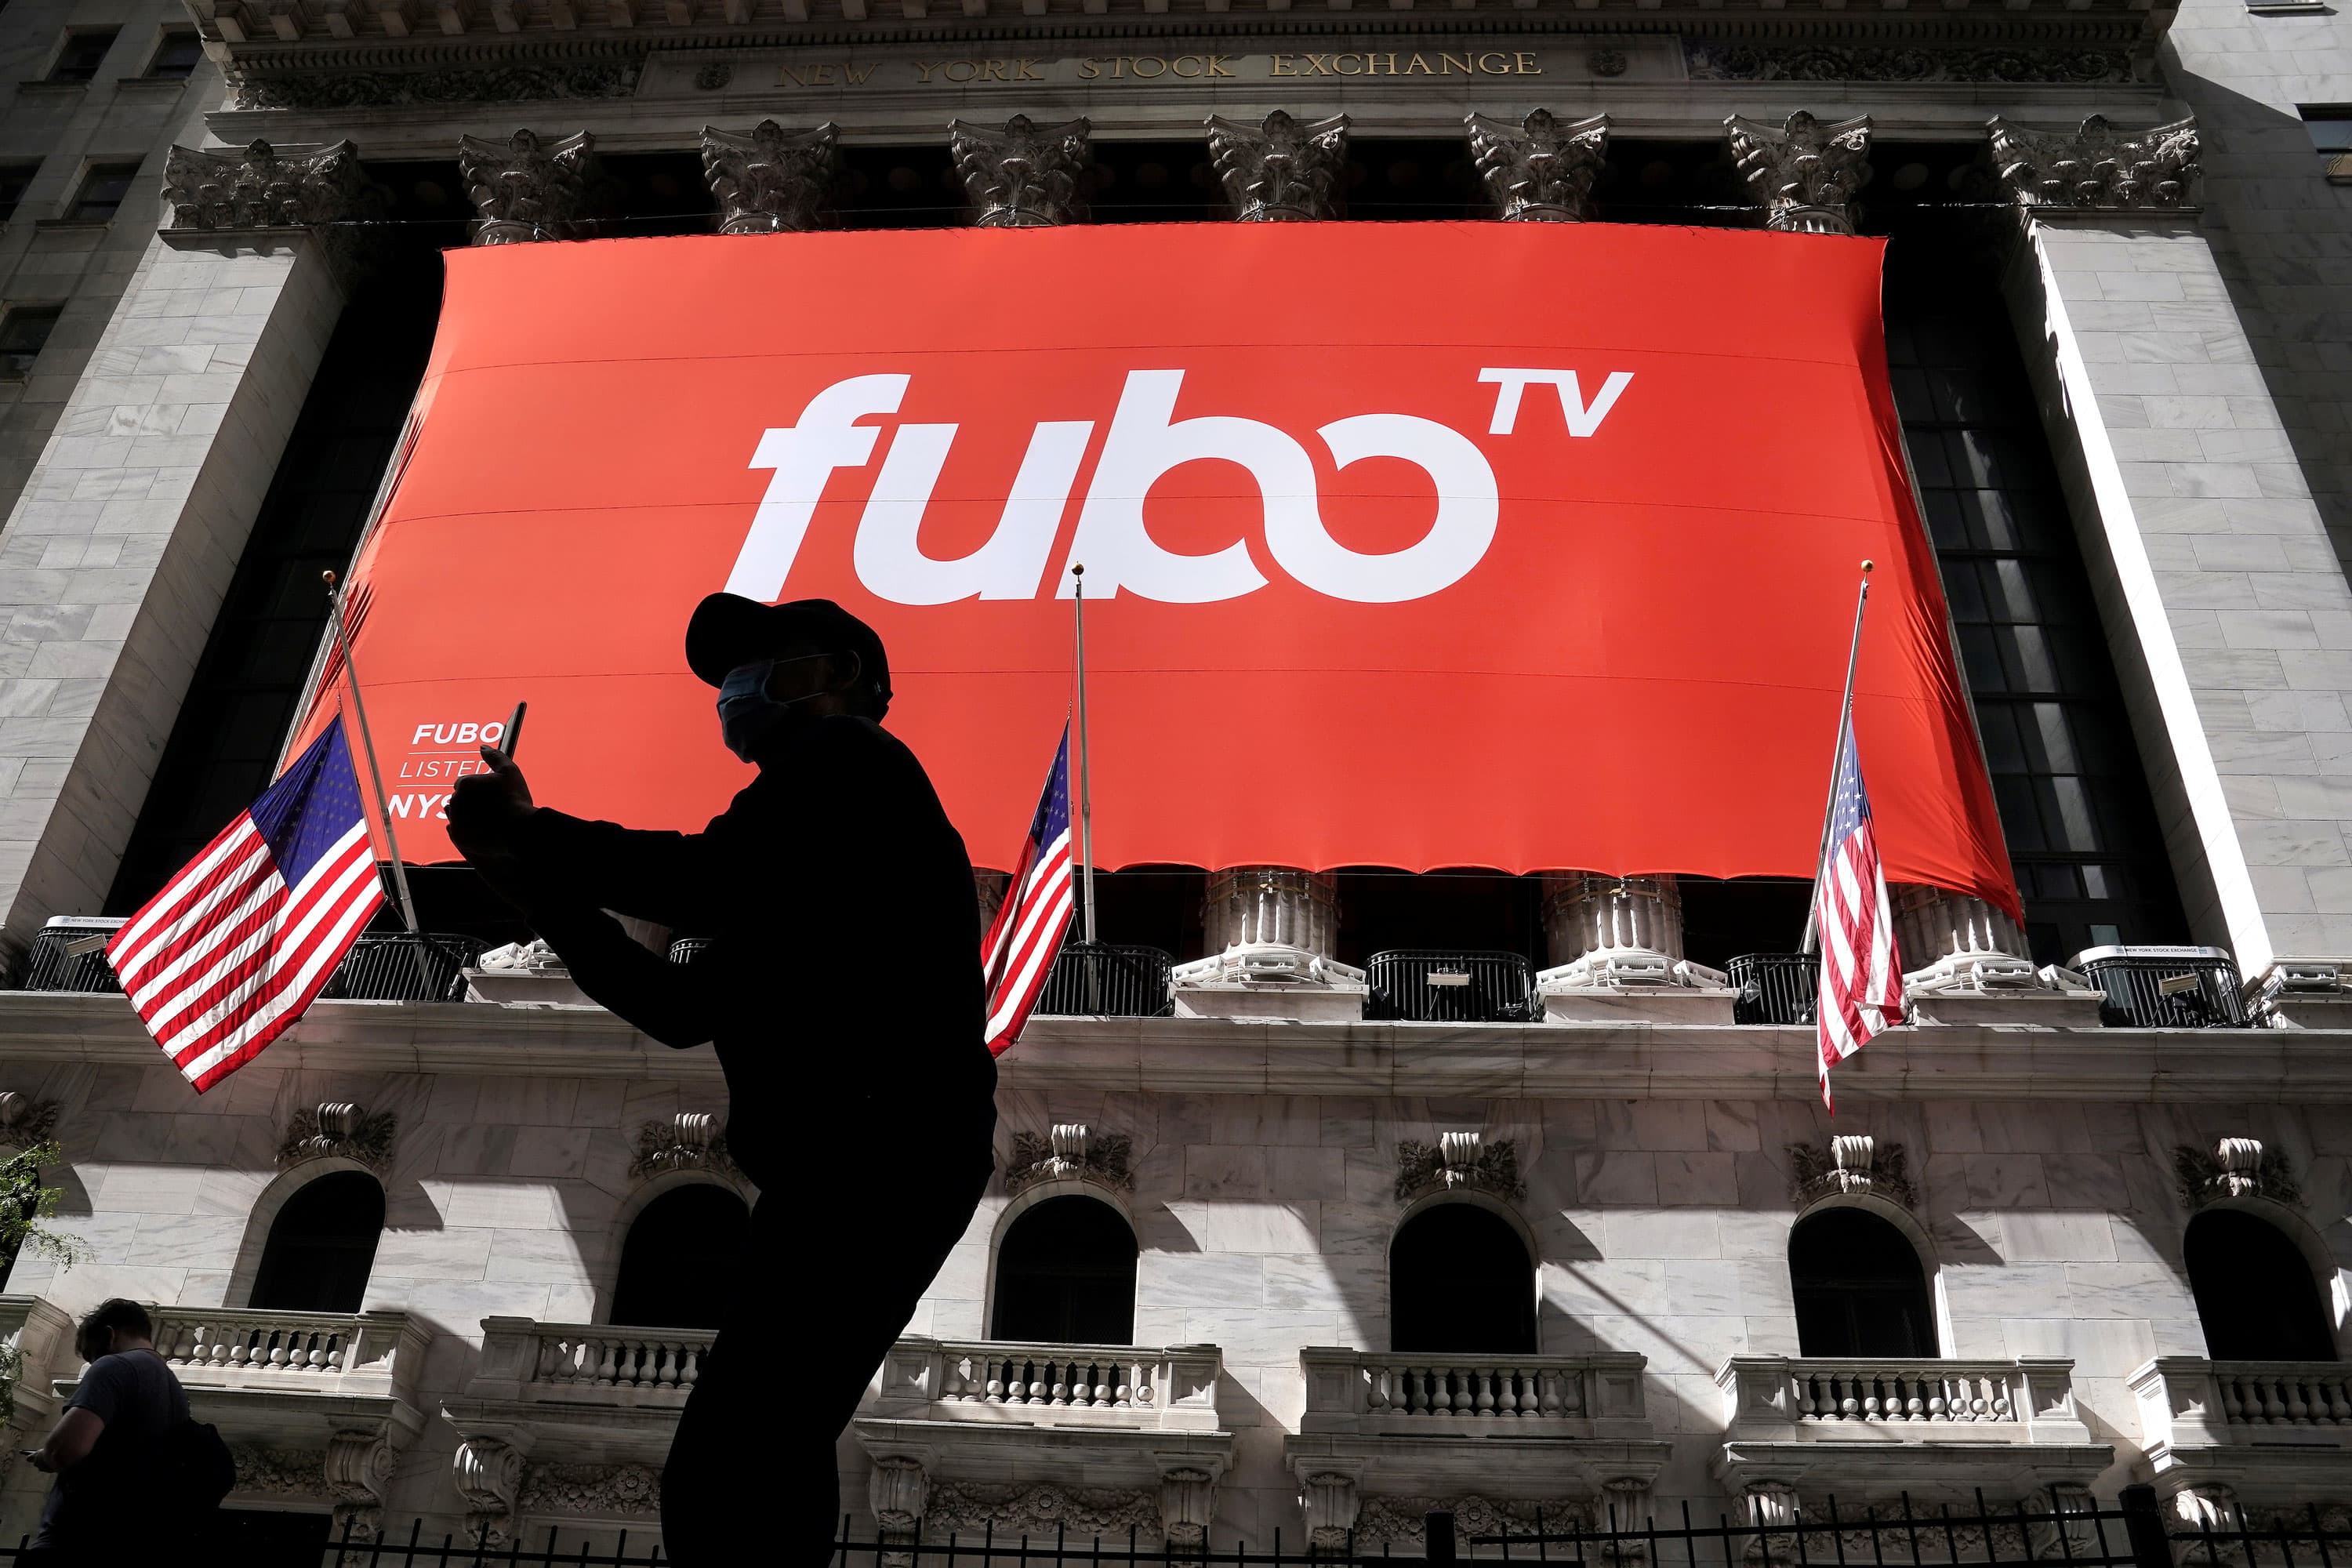 Wedbush atualiza fuboTV para superar citando 'ponto de entrada atraente' após retração de estoque